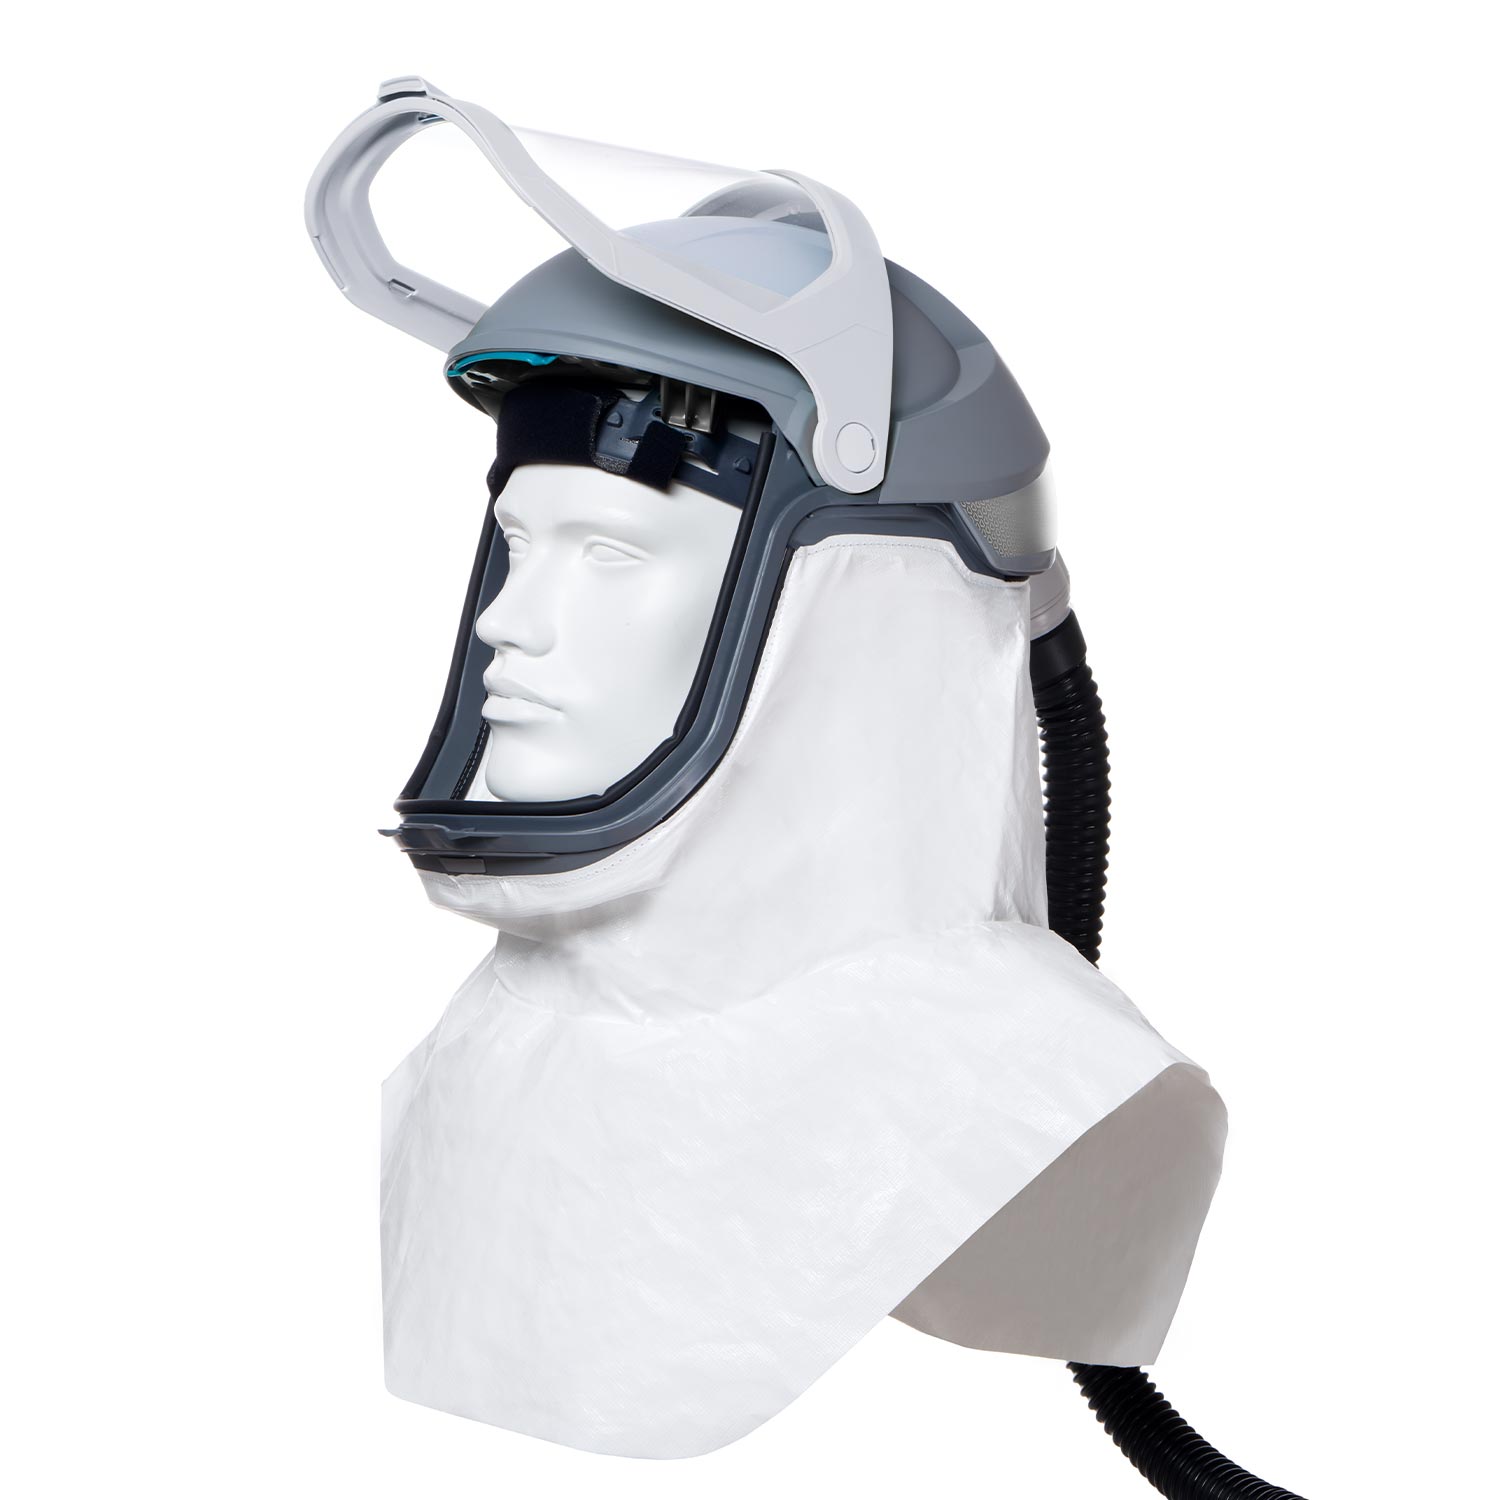 Grau-weißer Helm mit durchsichtigem Visier geöffnet